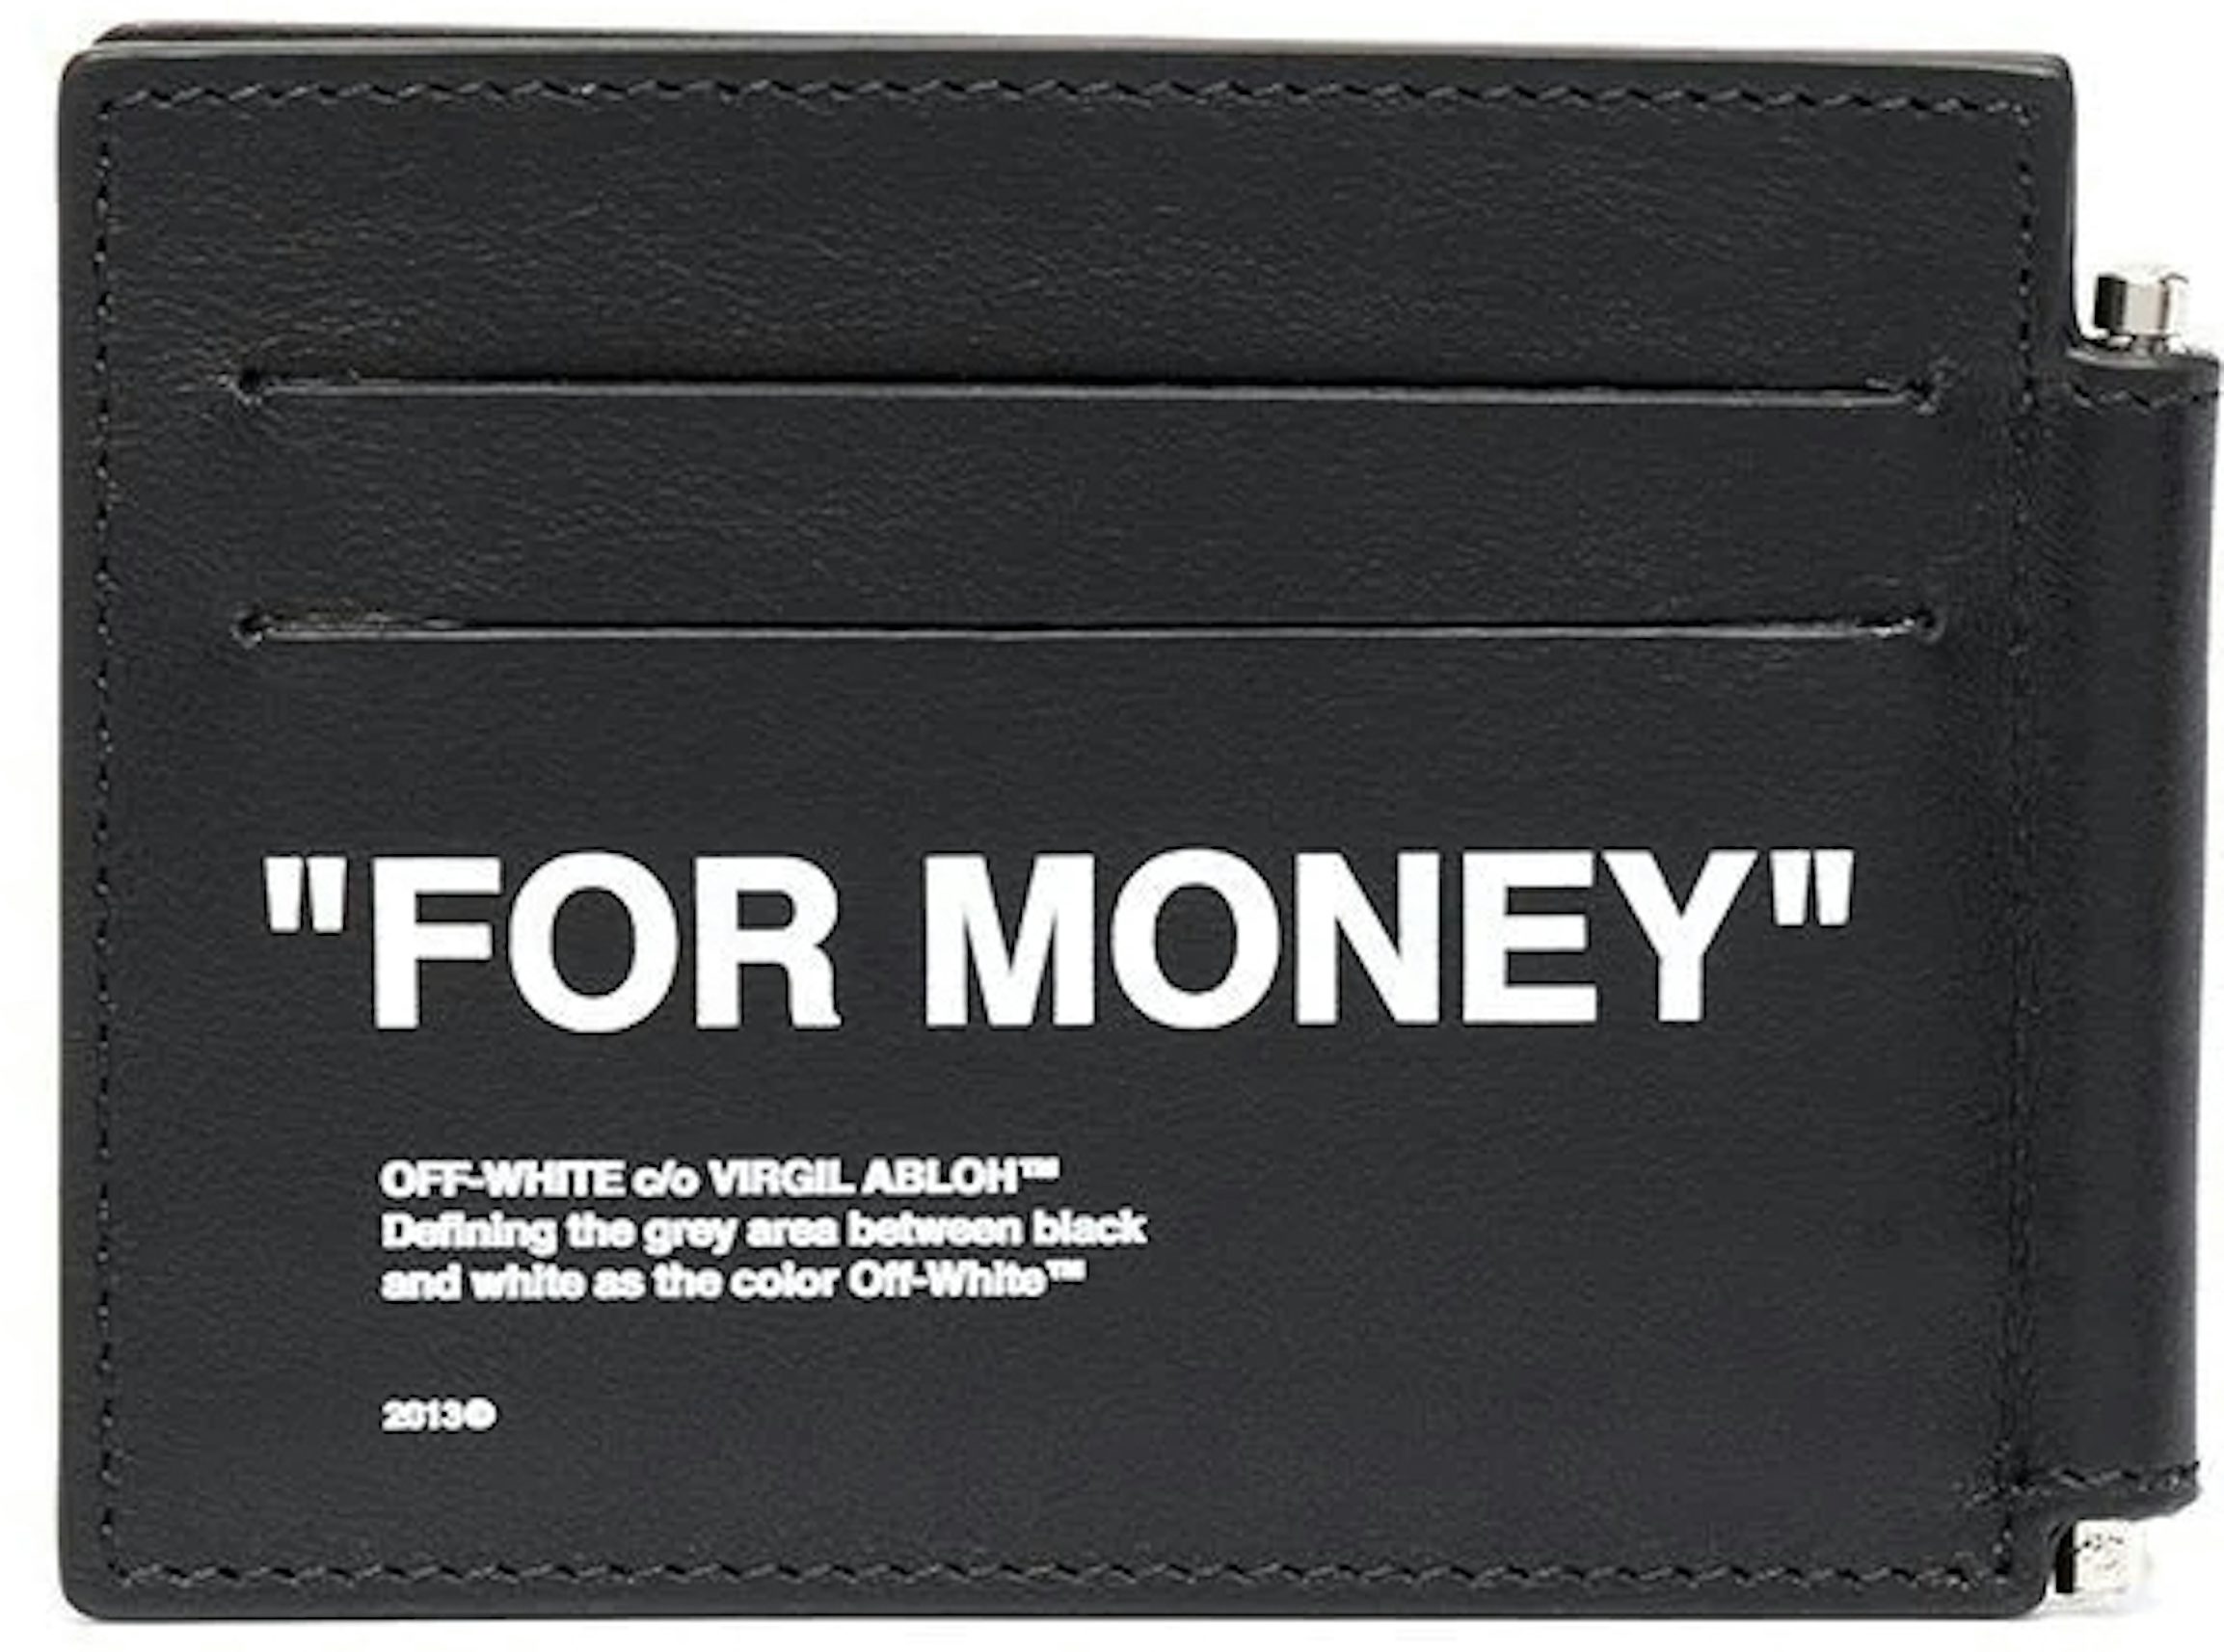 Monogram leather wallet w/ bill clip - Saint Laurent - Men